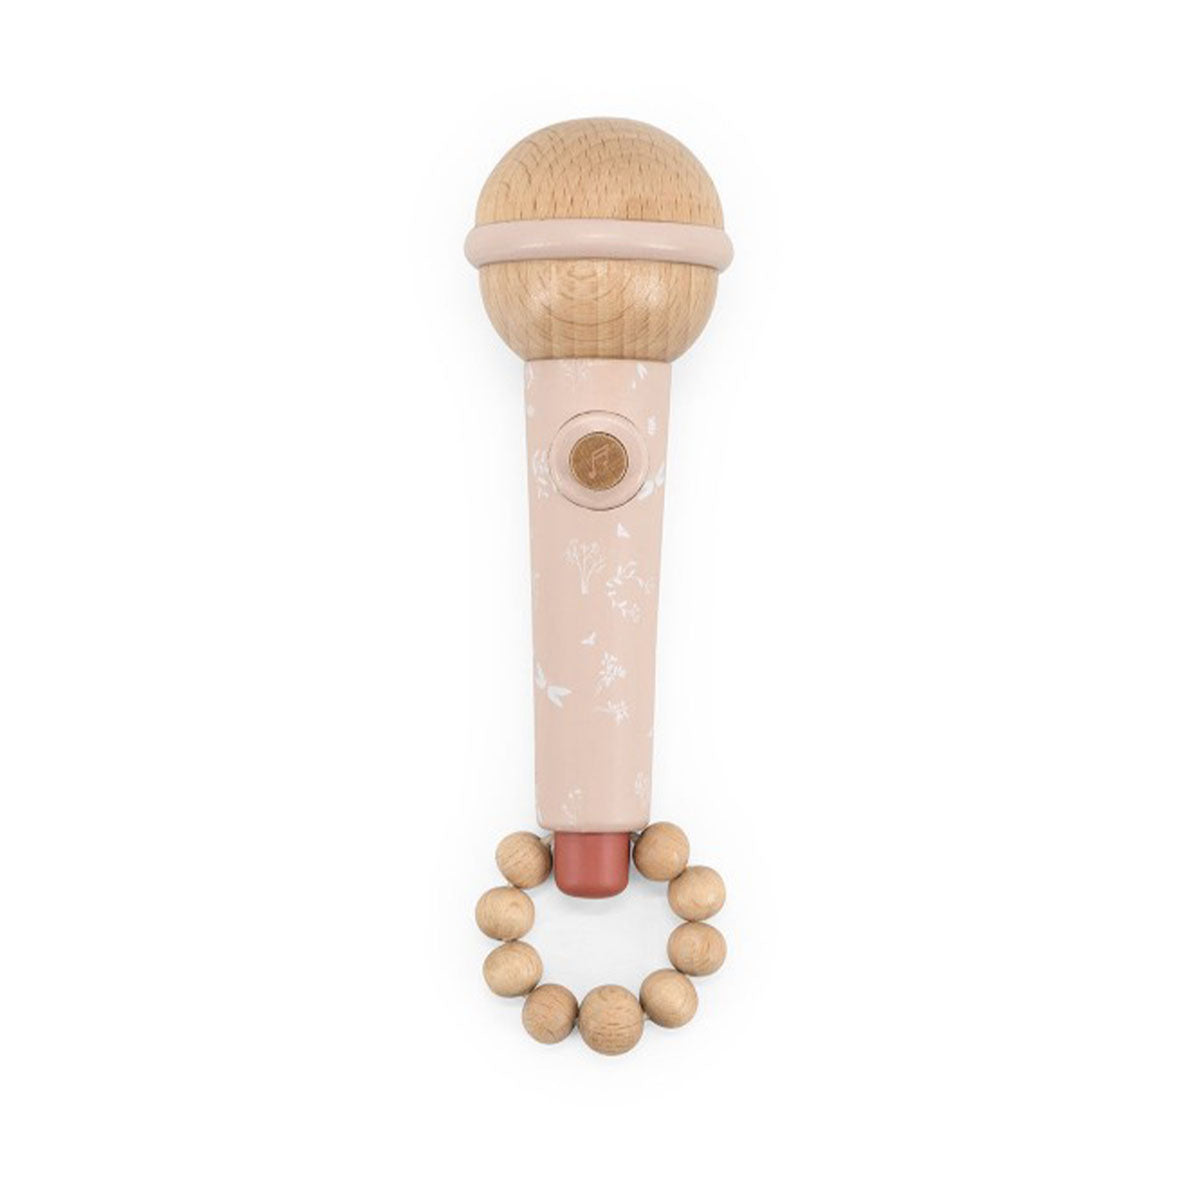 Laat je kindje zijn of haar zangkunsten ontdekken met deze fantastische houten microfoon in de kleur roze van het leuke merk Label Label. Deze prachtige microfoon is niet alleen leuk om mee te spelen, maar ziet er ook fantastisch uit! VanZus